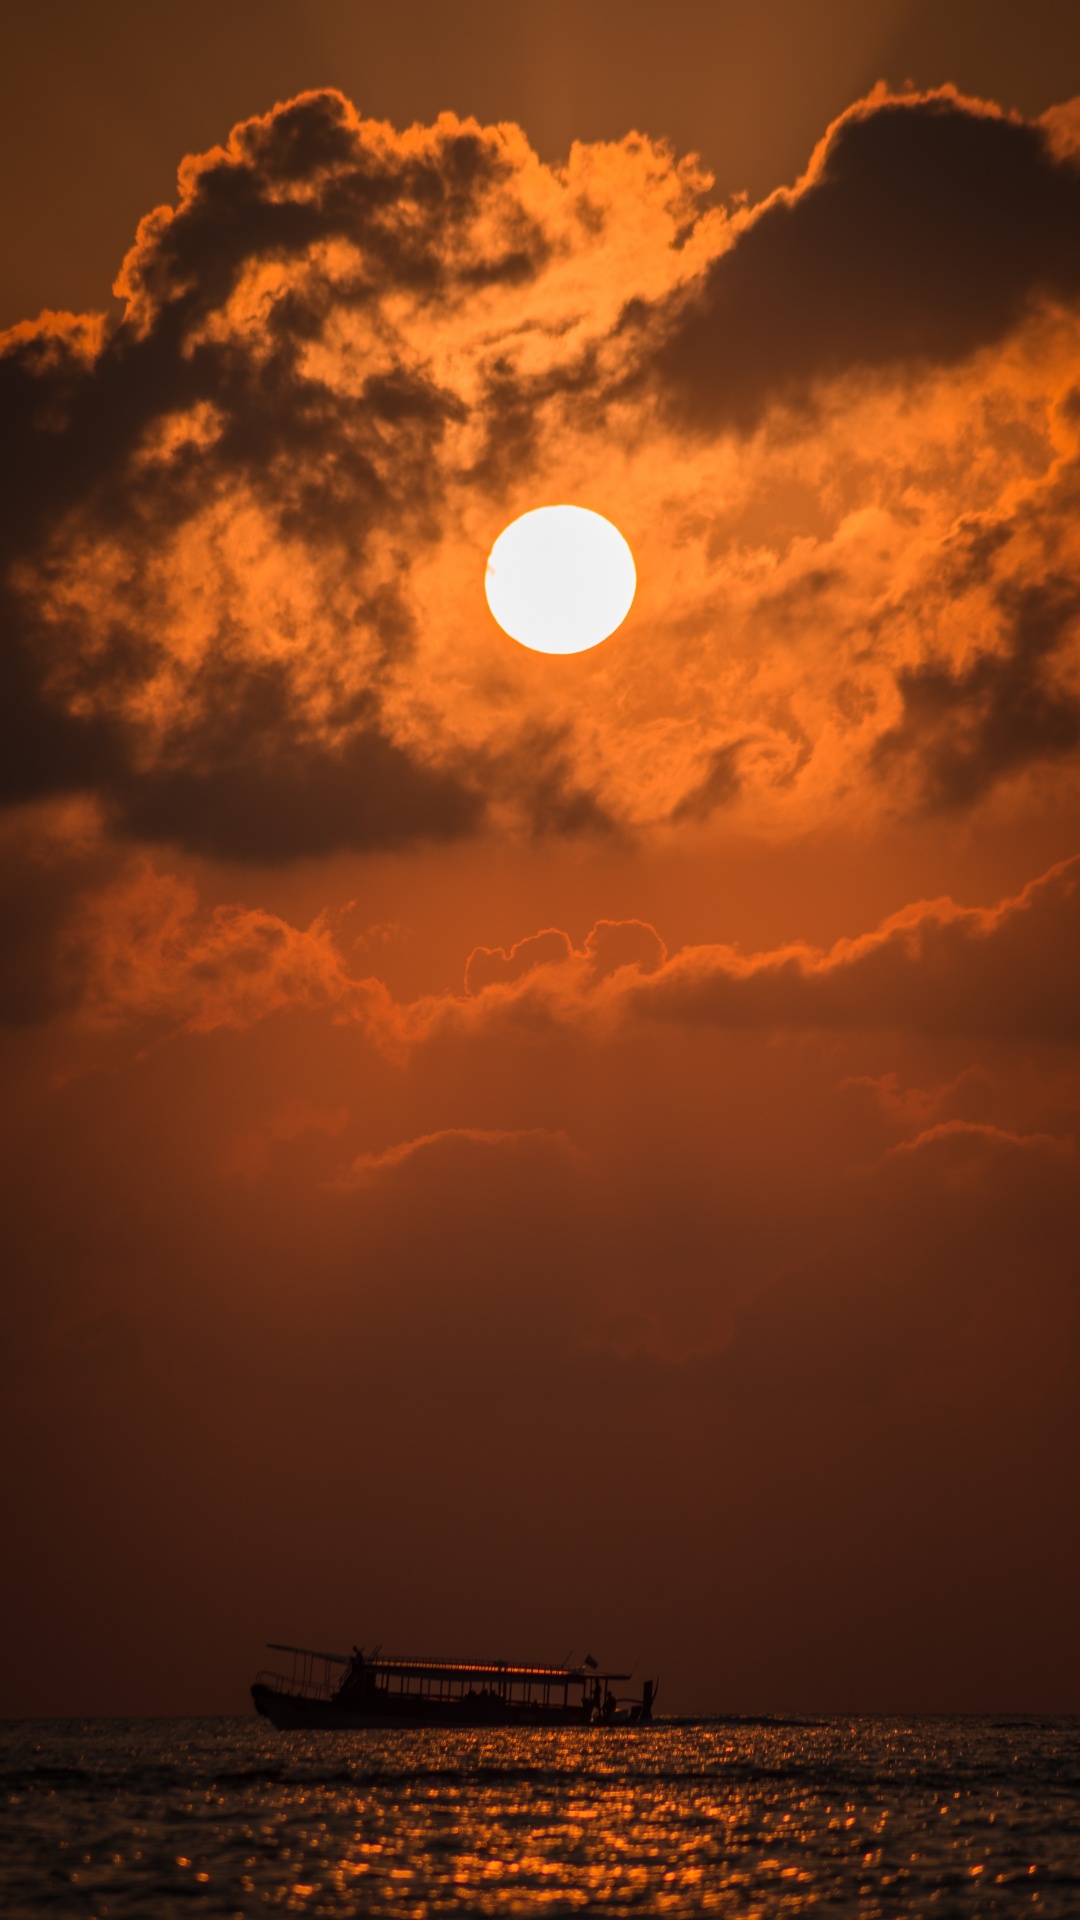 Sonnenuntergang, Afterglow, Sonne, Cloud, Orange. Wallpaper in 1080x1920 Resolution